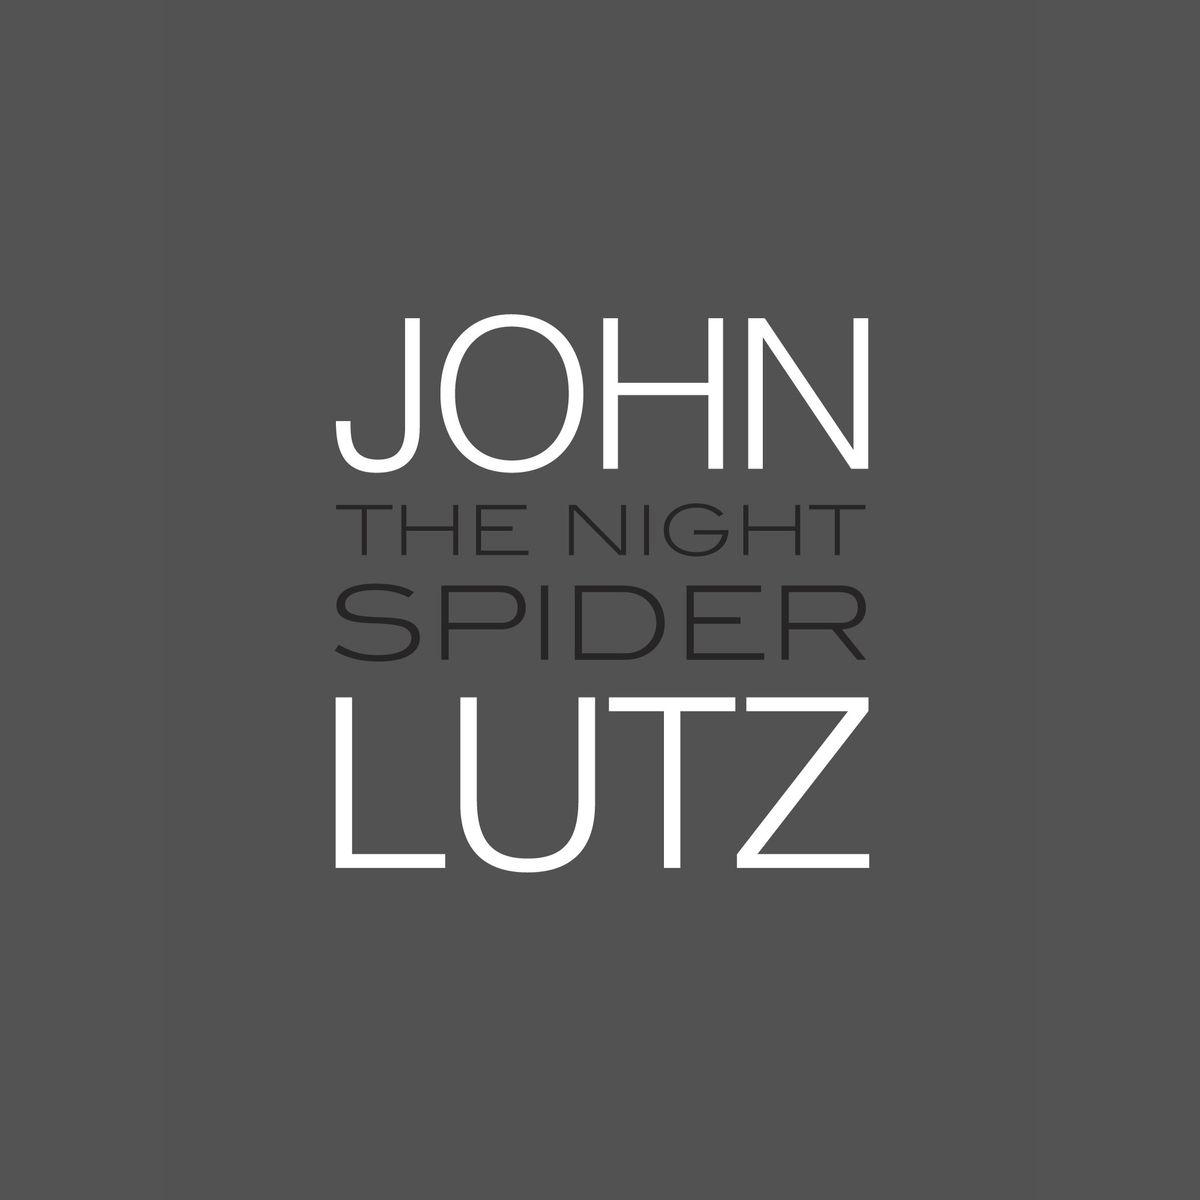 Spider -Man 3 Logo - The Night Spider audiobook